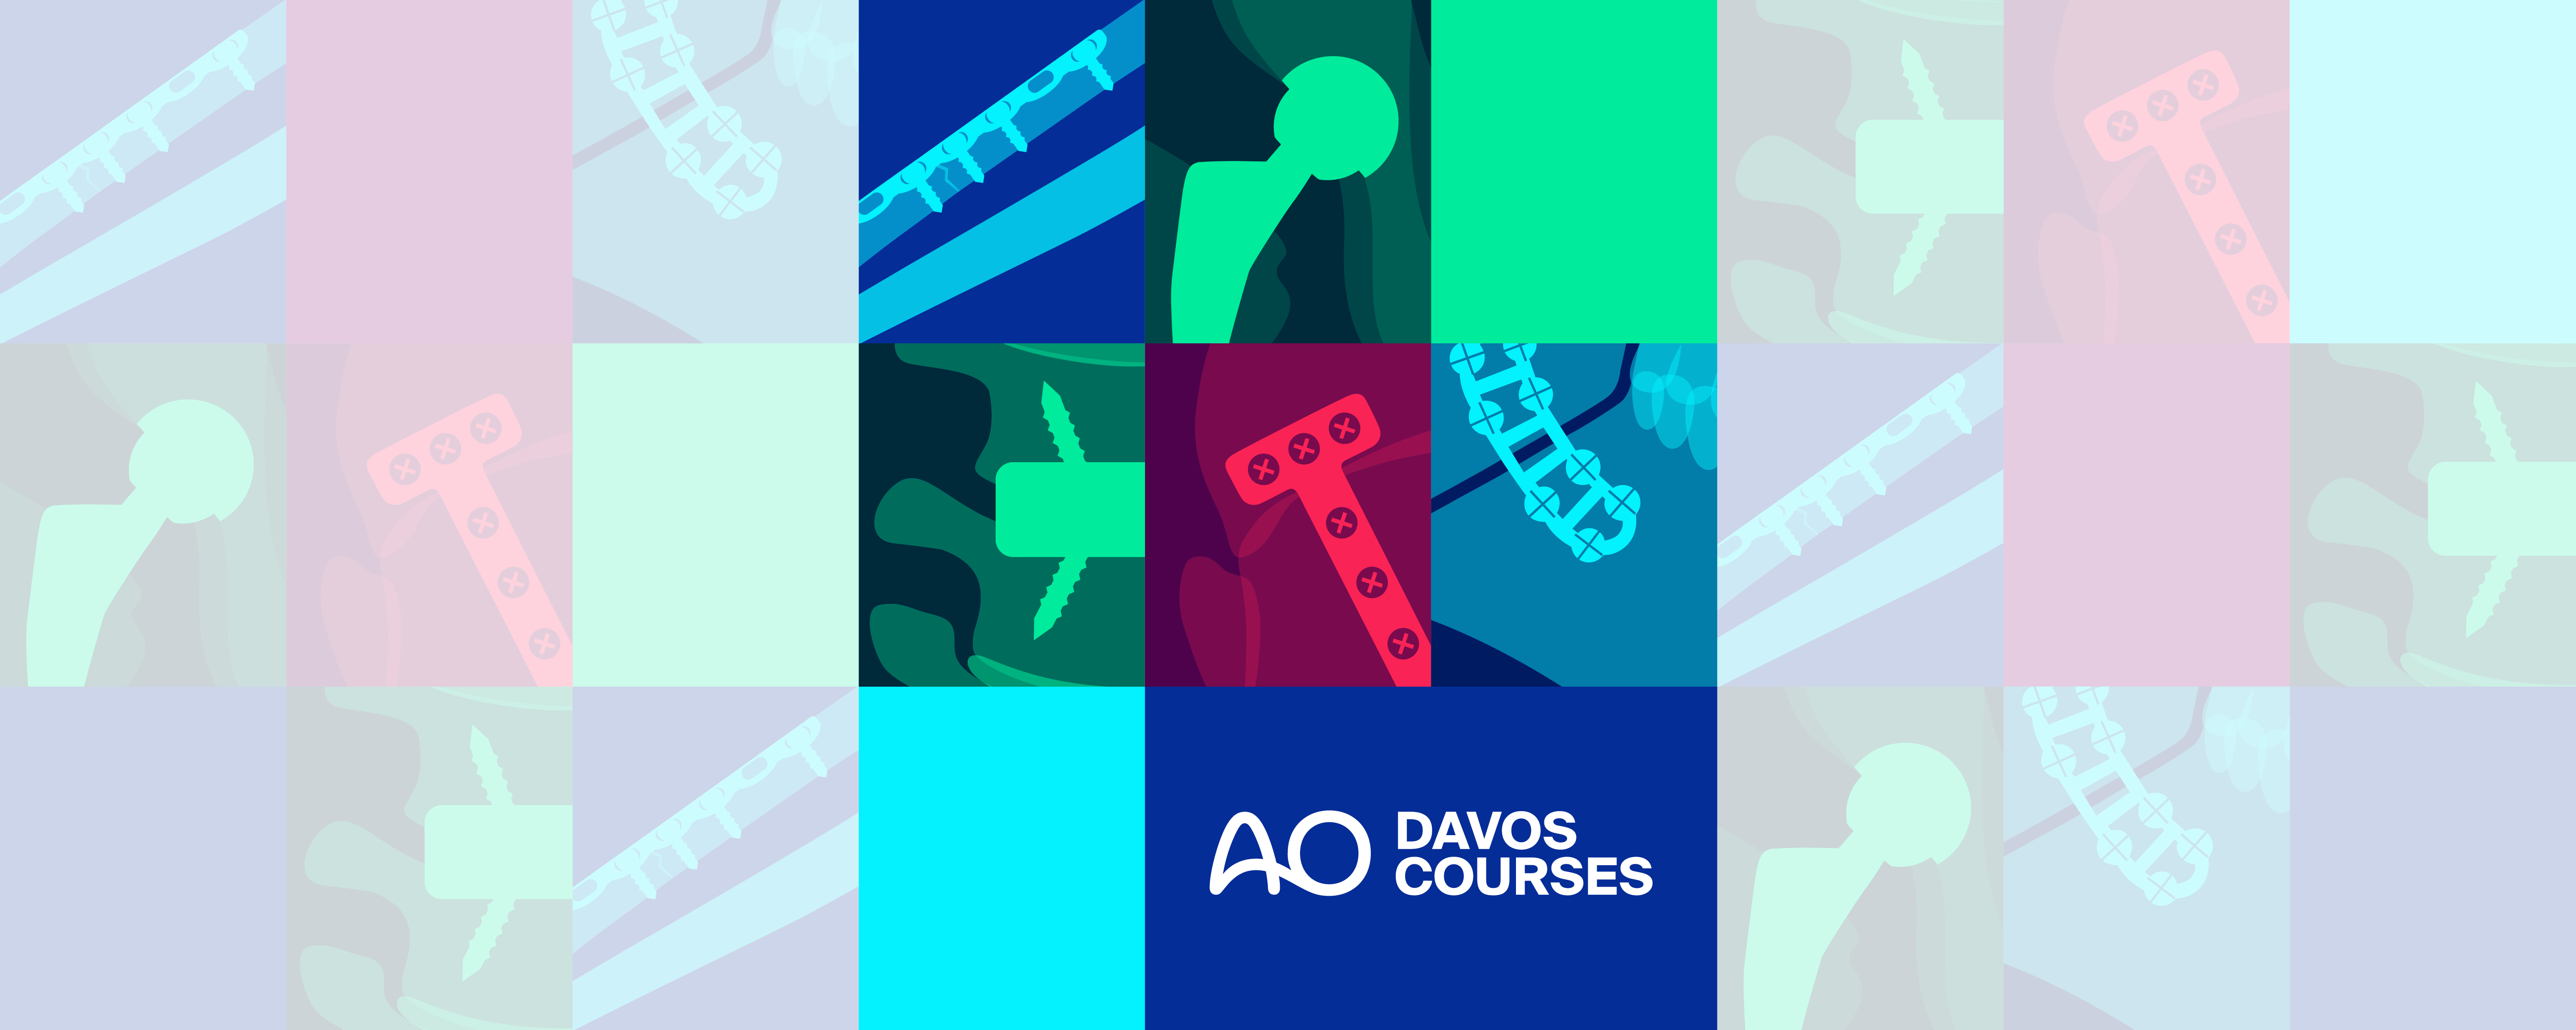 AO Davos Courses visual carousel